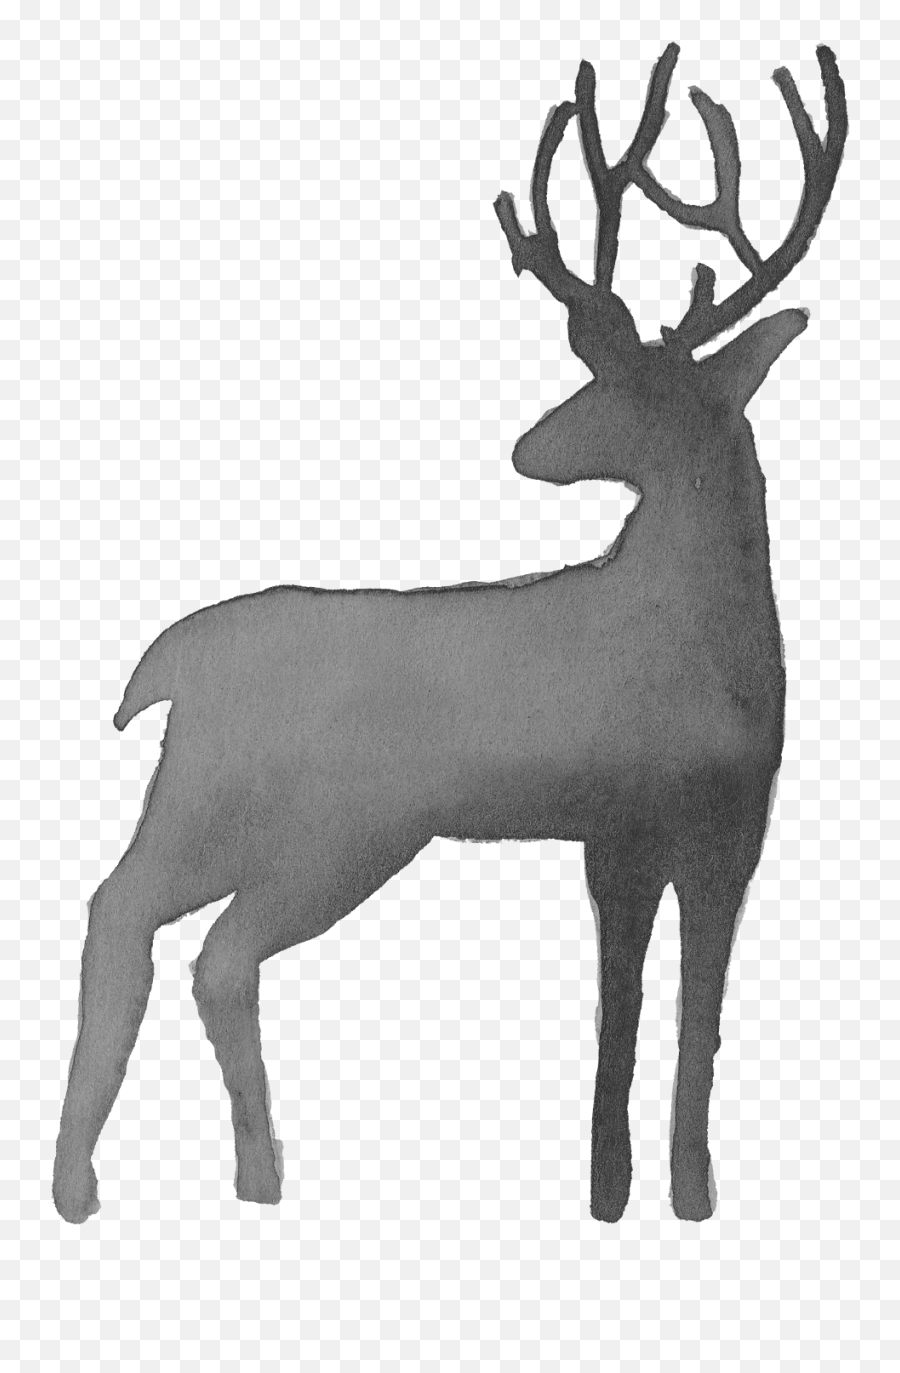 6 Watercolor Deer Silhouette Png Transparent Onlygfxcom - Deer Watercolor Transparent Background,Reindeer Transparent Background